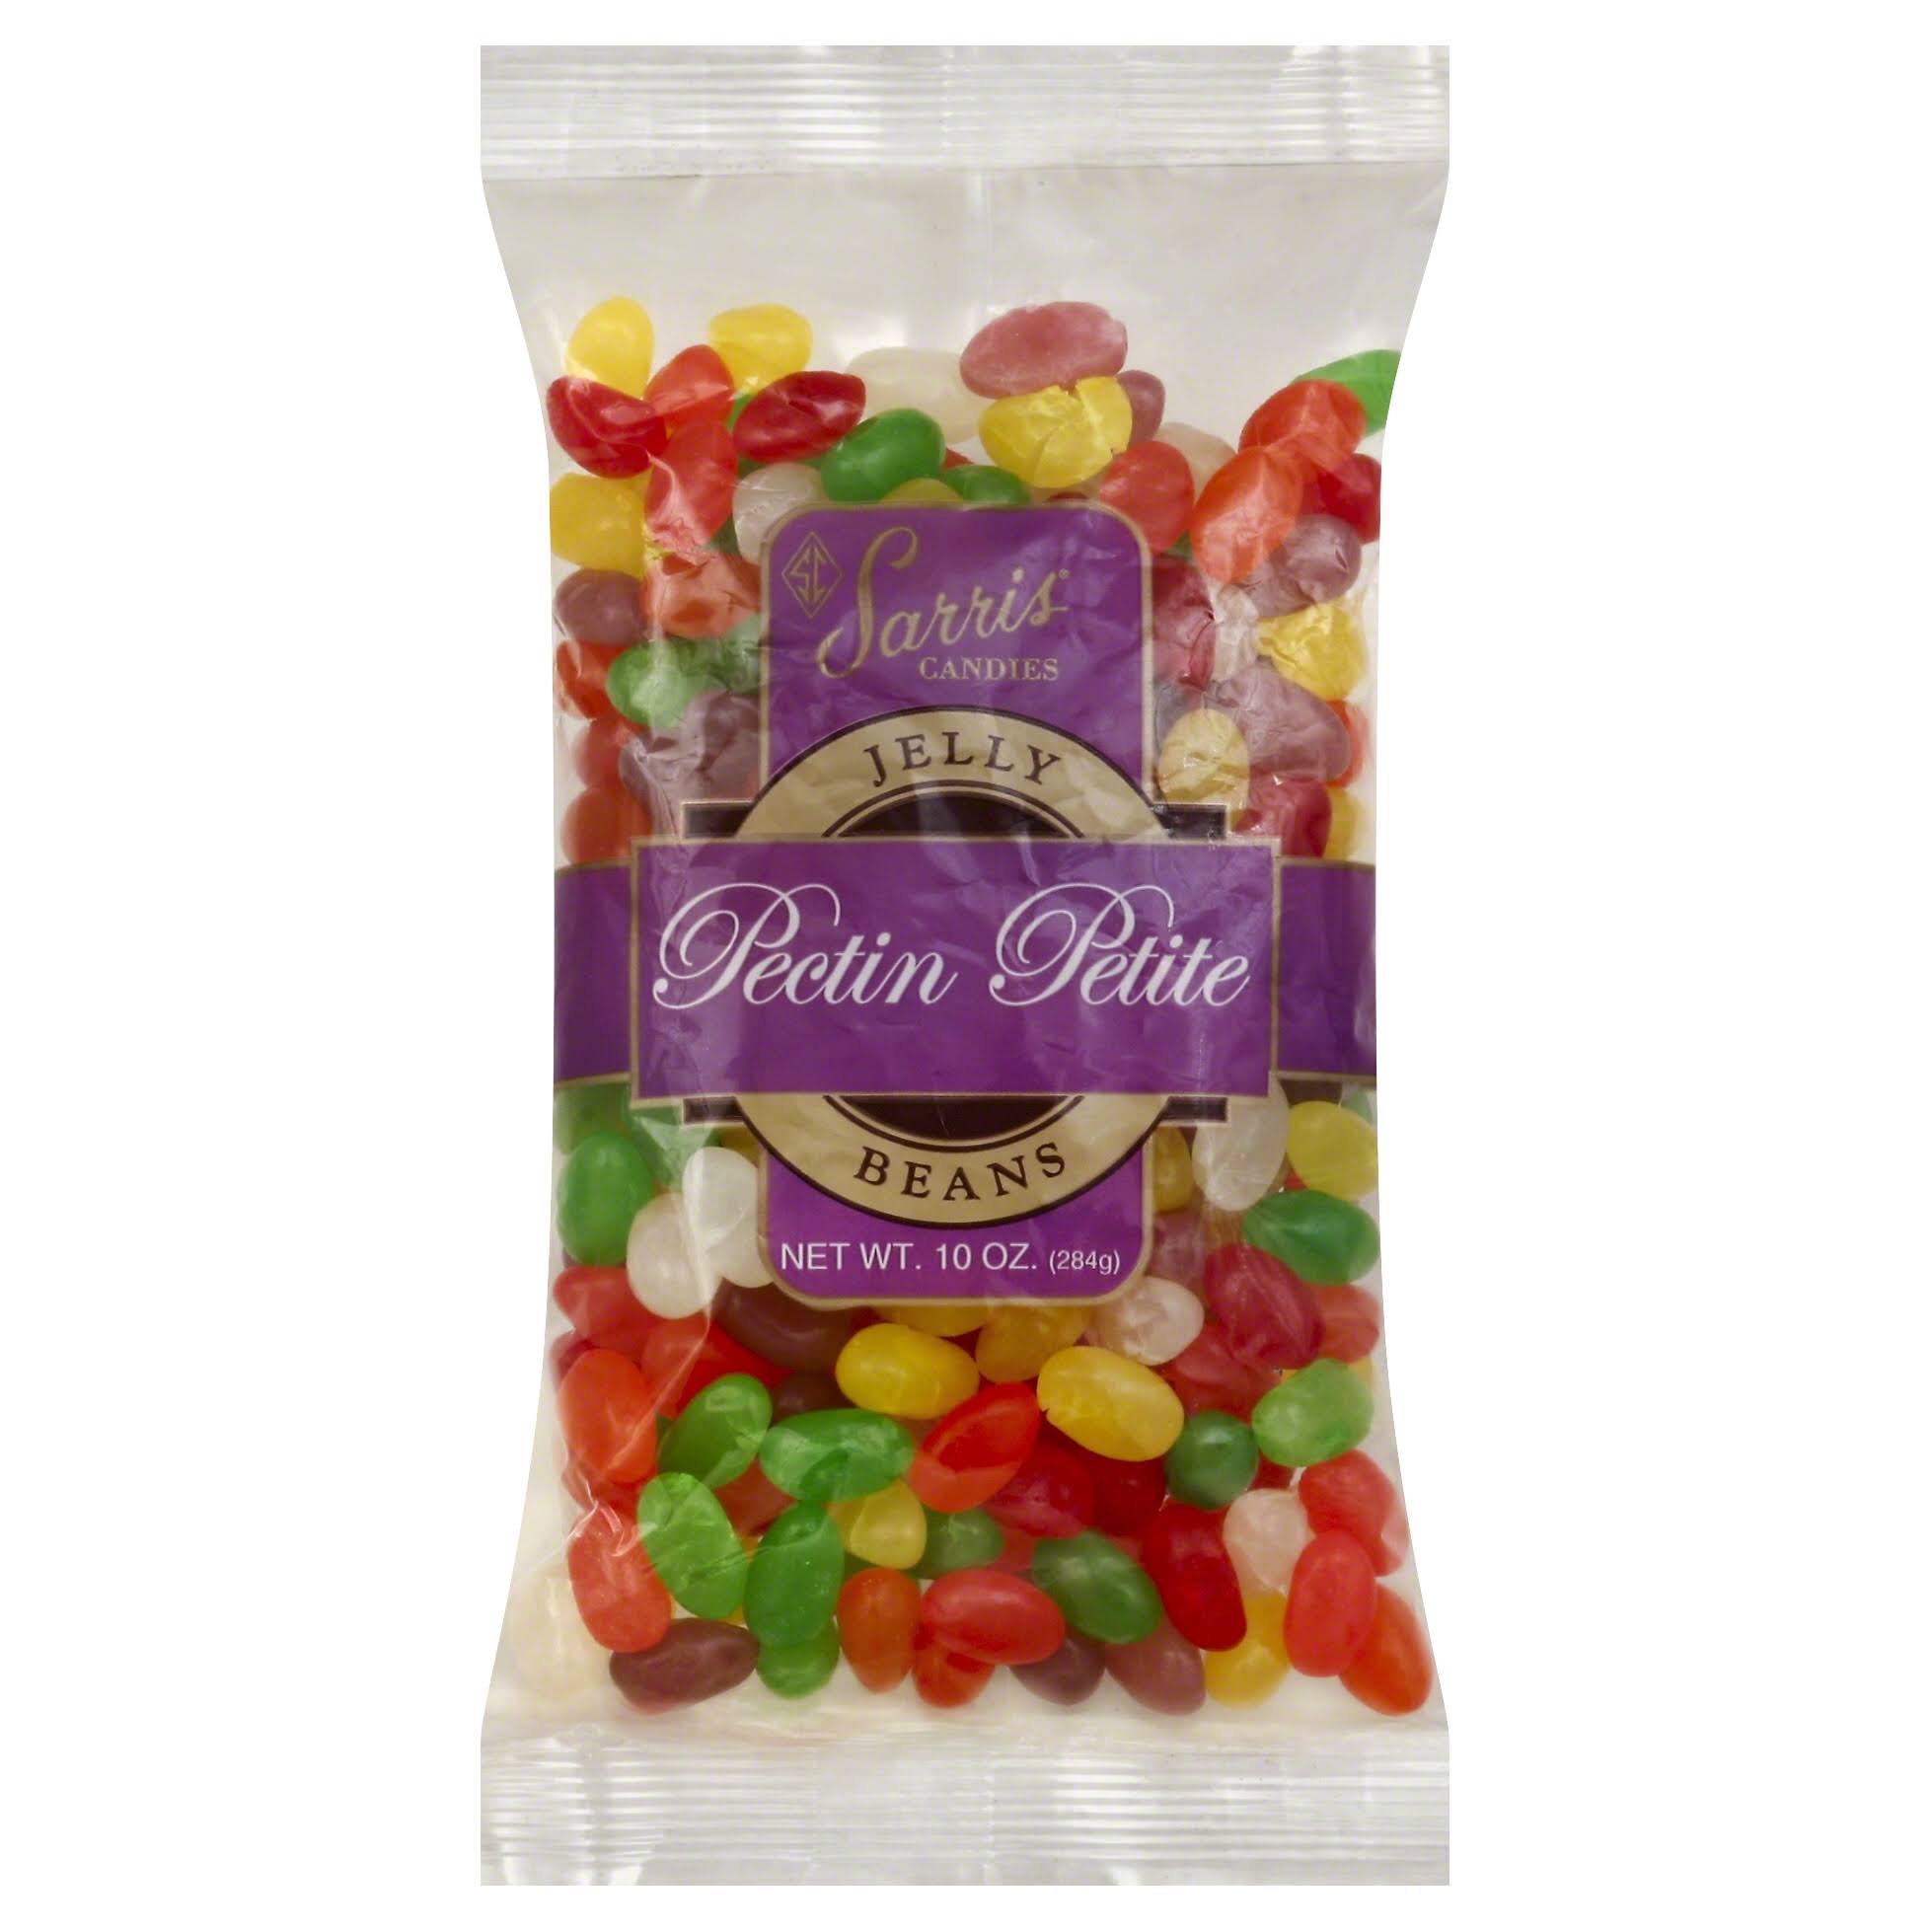 Sarris Candies Jelly Beans, Pectin Petite - 10 oz